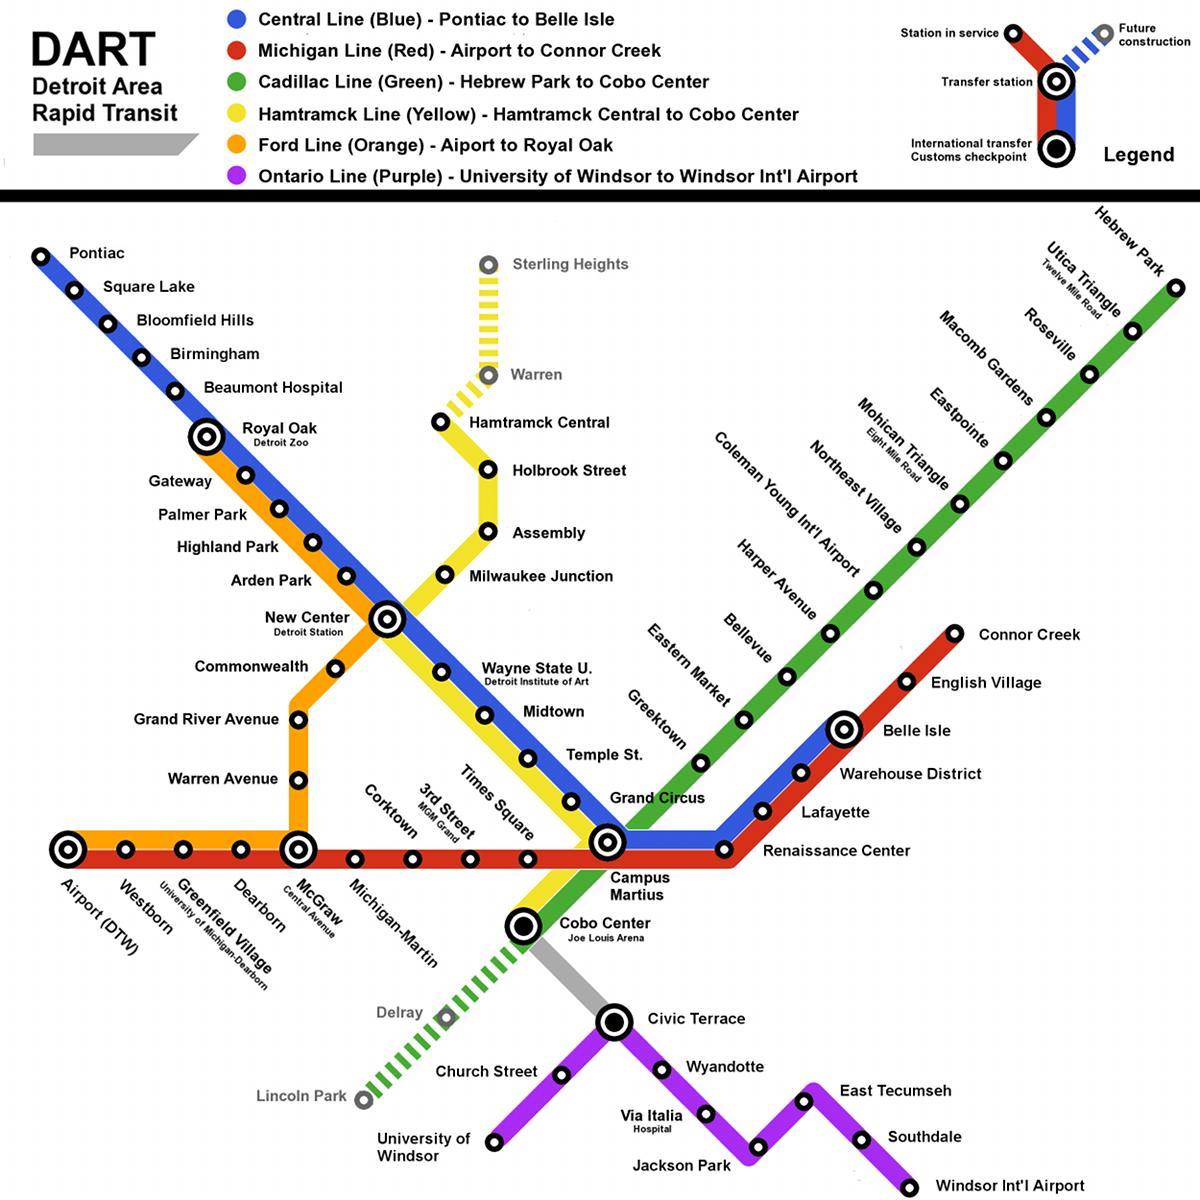 Metro Detroit žemėlapyje